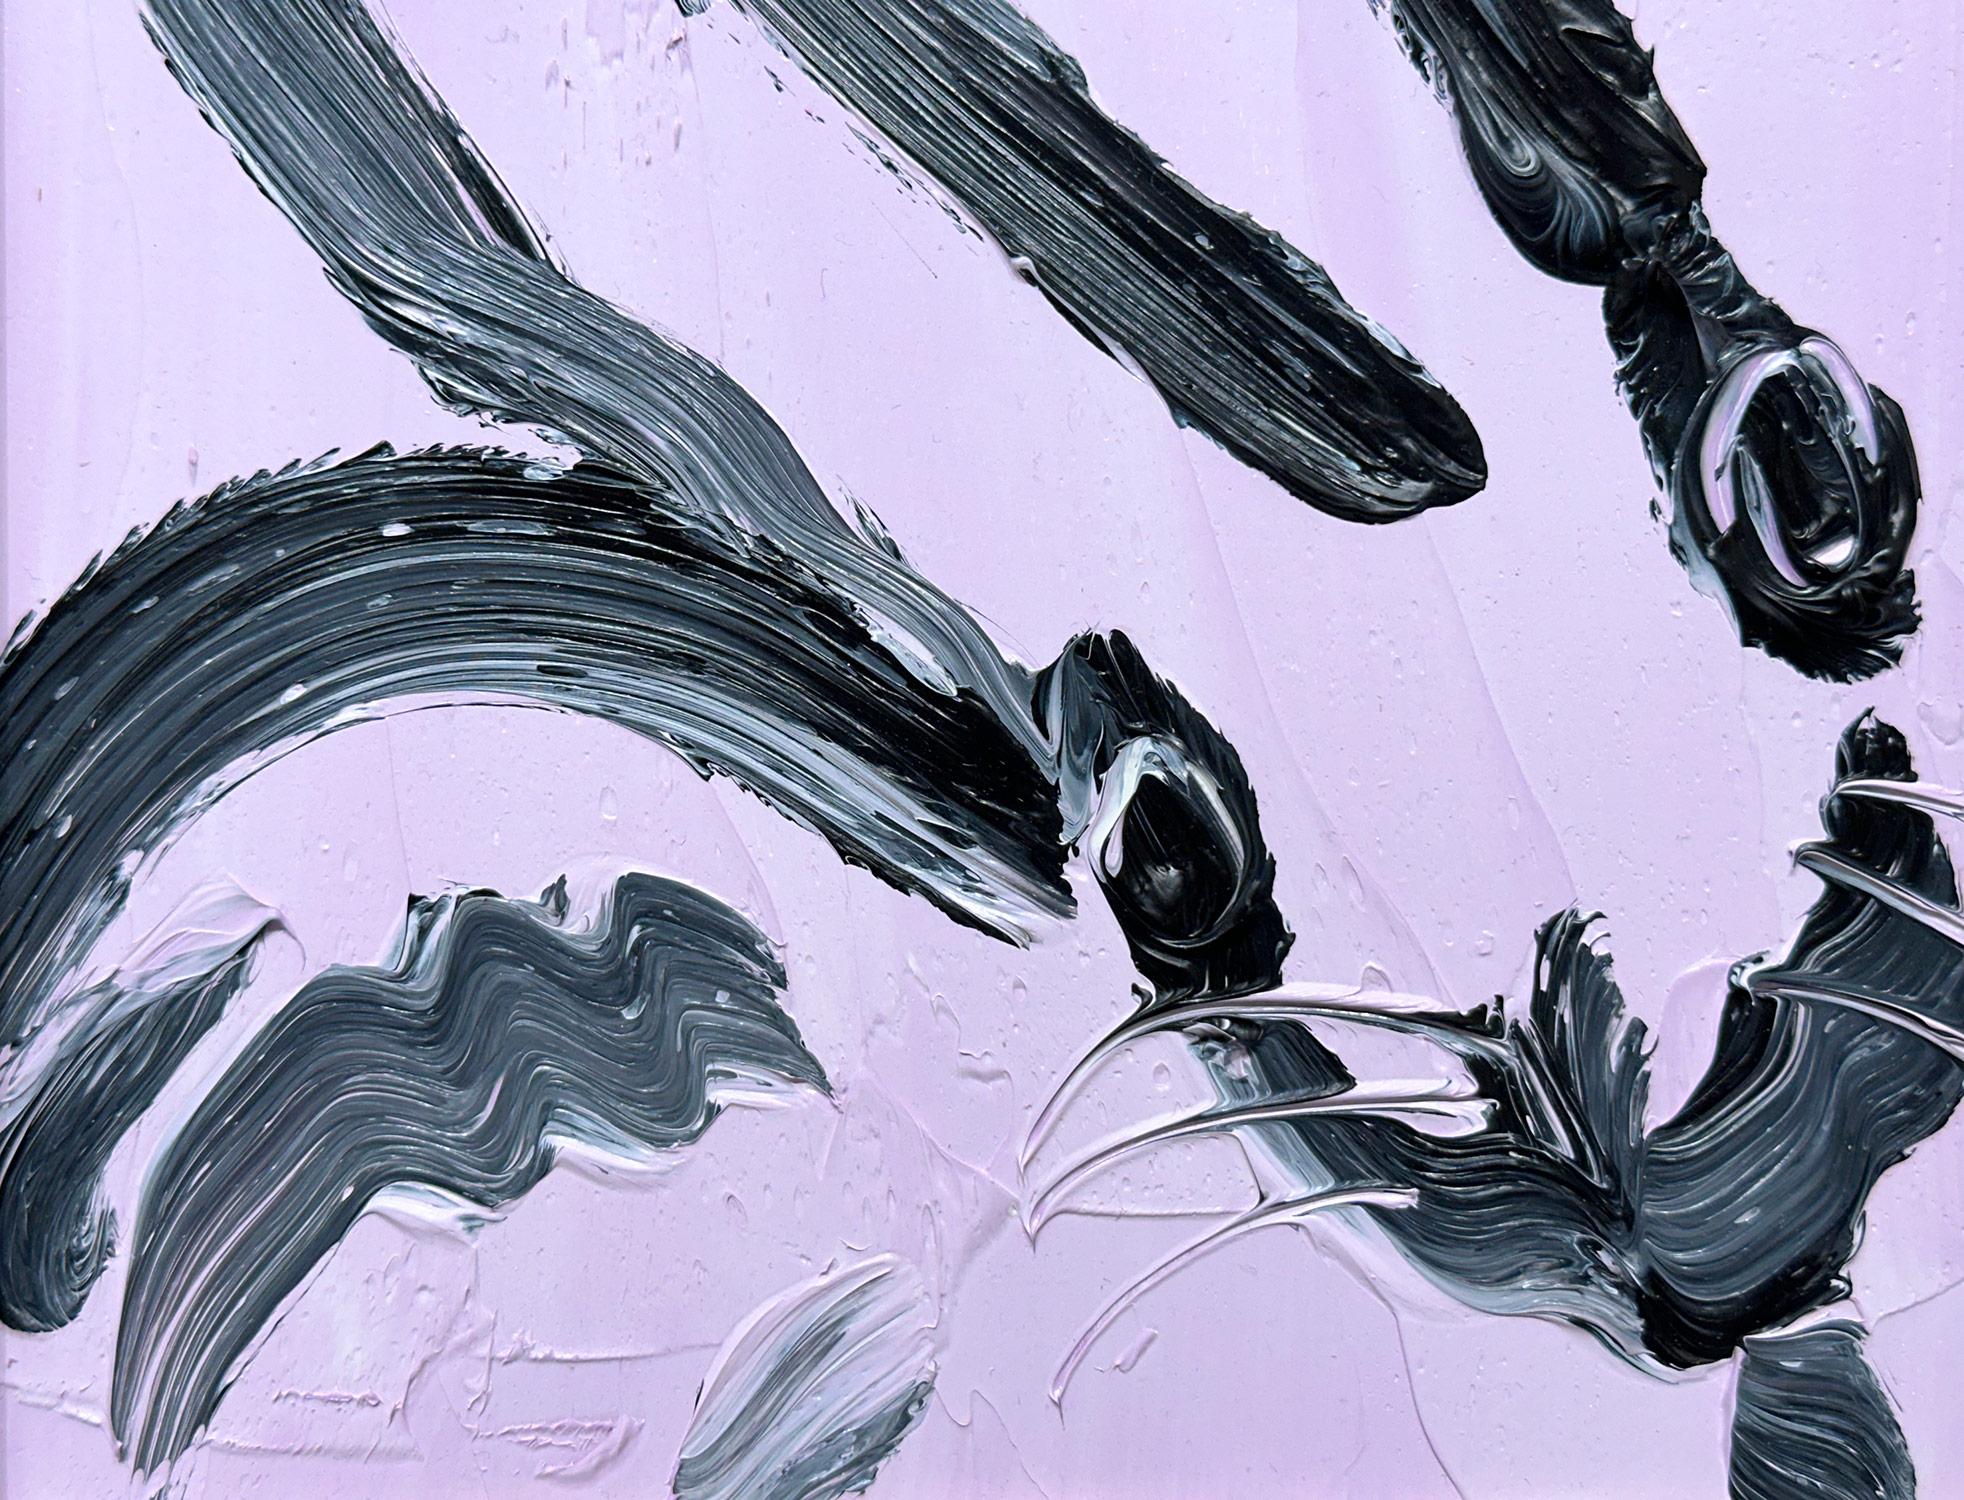 Eine wunderbare Komposition eines der ikonischsten Themen von Slonem, nämlich Hasen. Diese Arbeit zeigt eine gestische Figur eines schwarzen Hasen auf einem hellen lavendelfarbenen Hintergrund mit dickem Farbauftrag. Es ist in einem wunderschönen